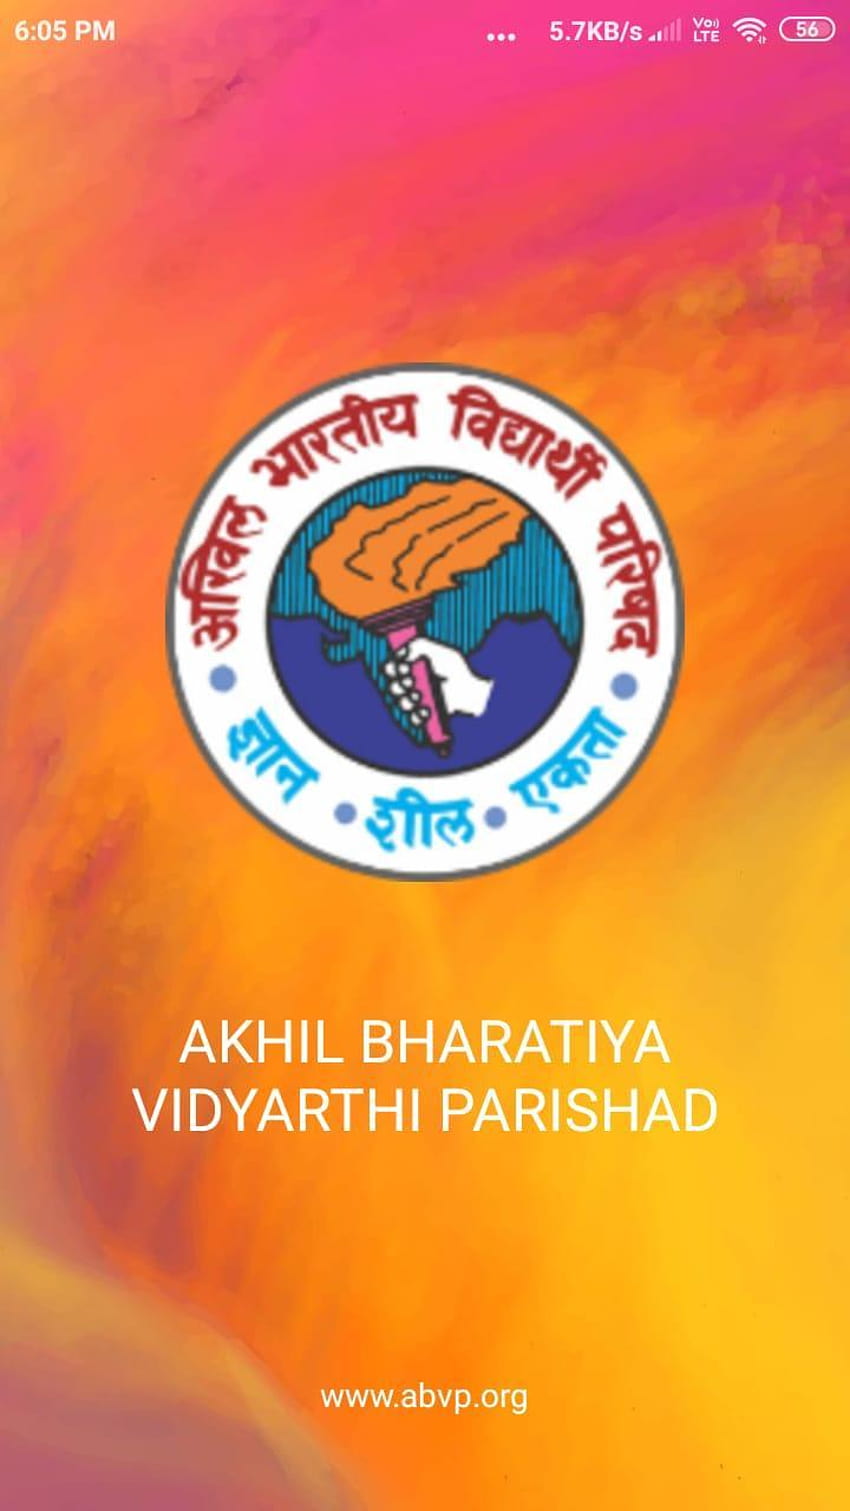 40th State... - Akhil Bharatiya Vidyarthi Parishad (ABVP) | Facebook